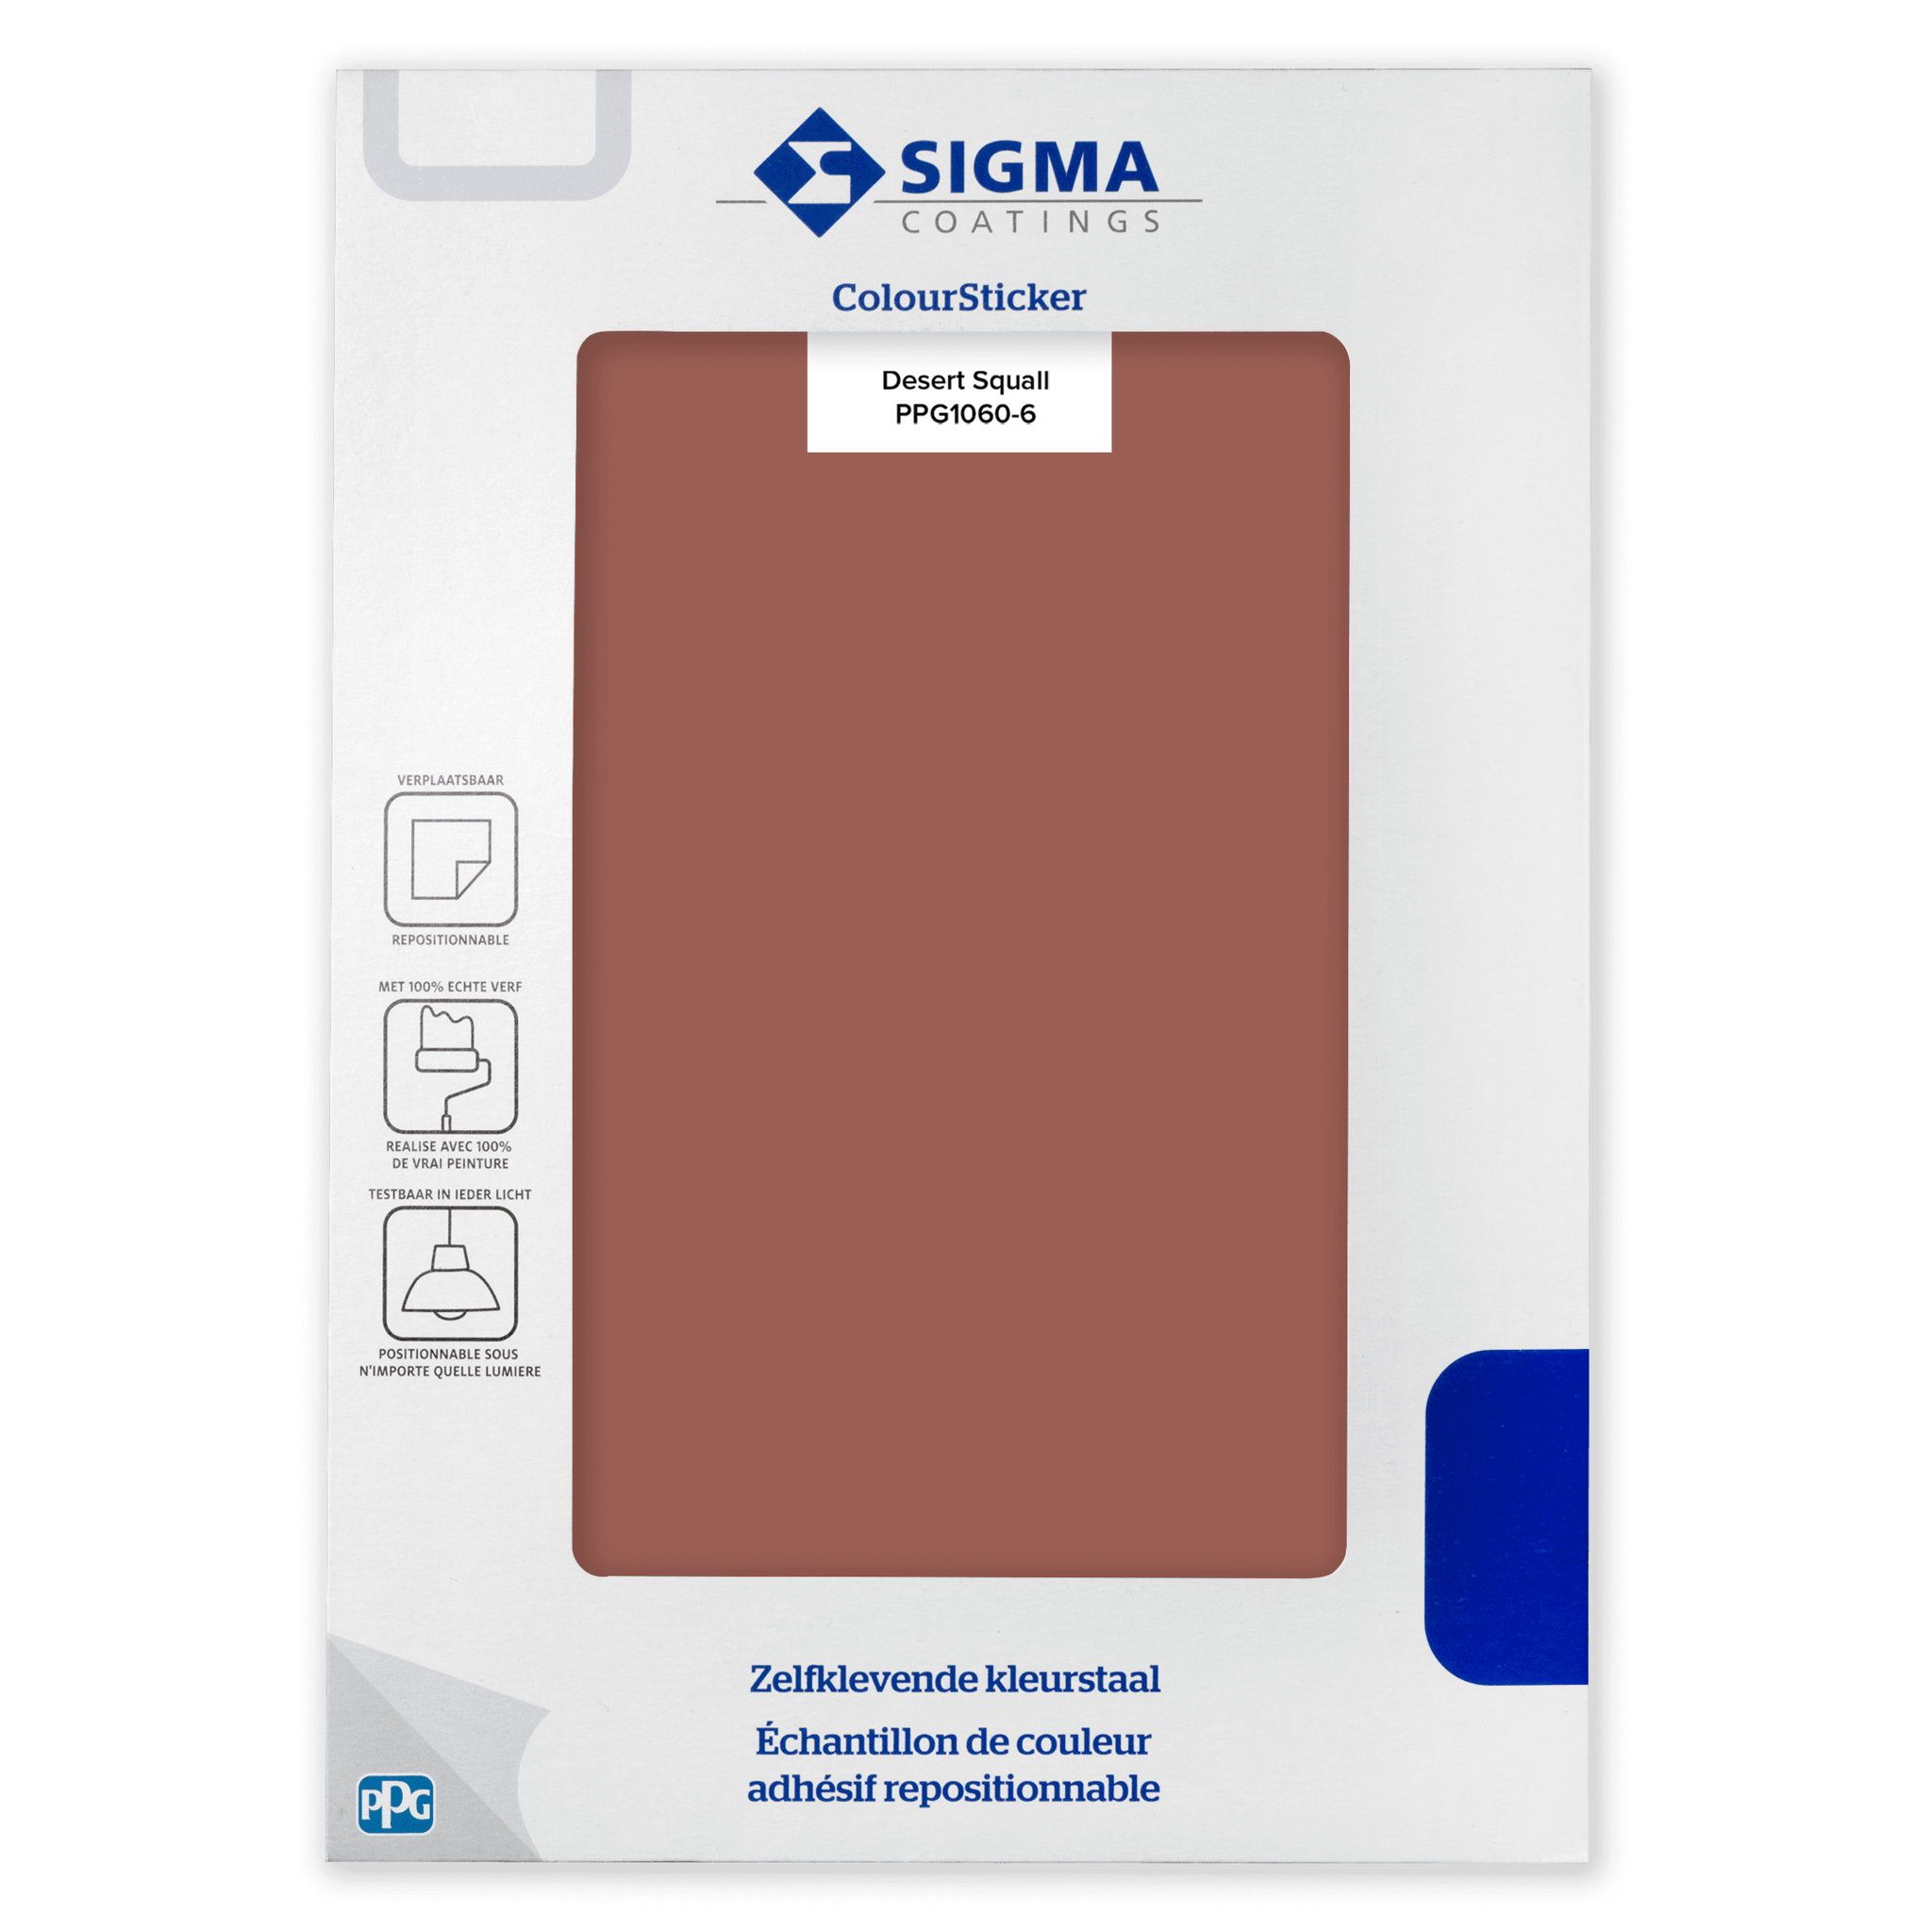 Sigma ColourSticker - Desert Squall 1060-6